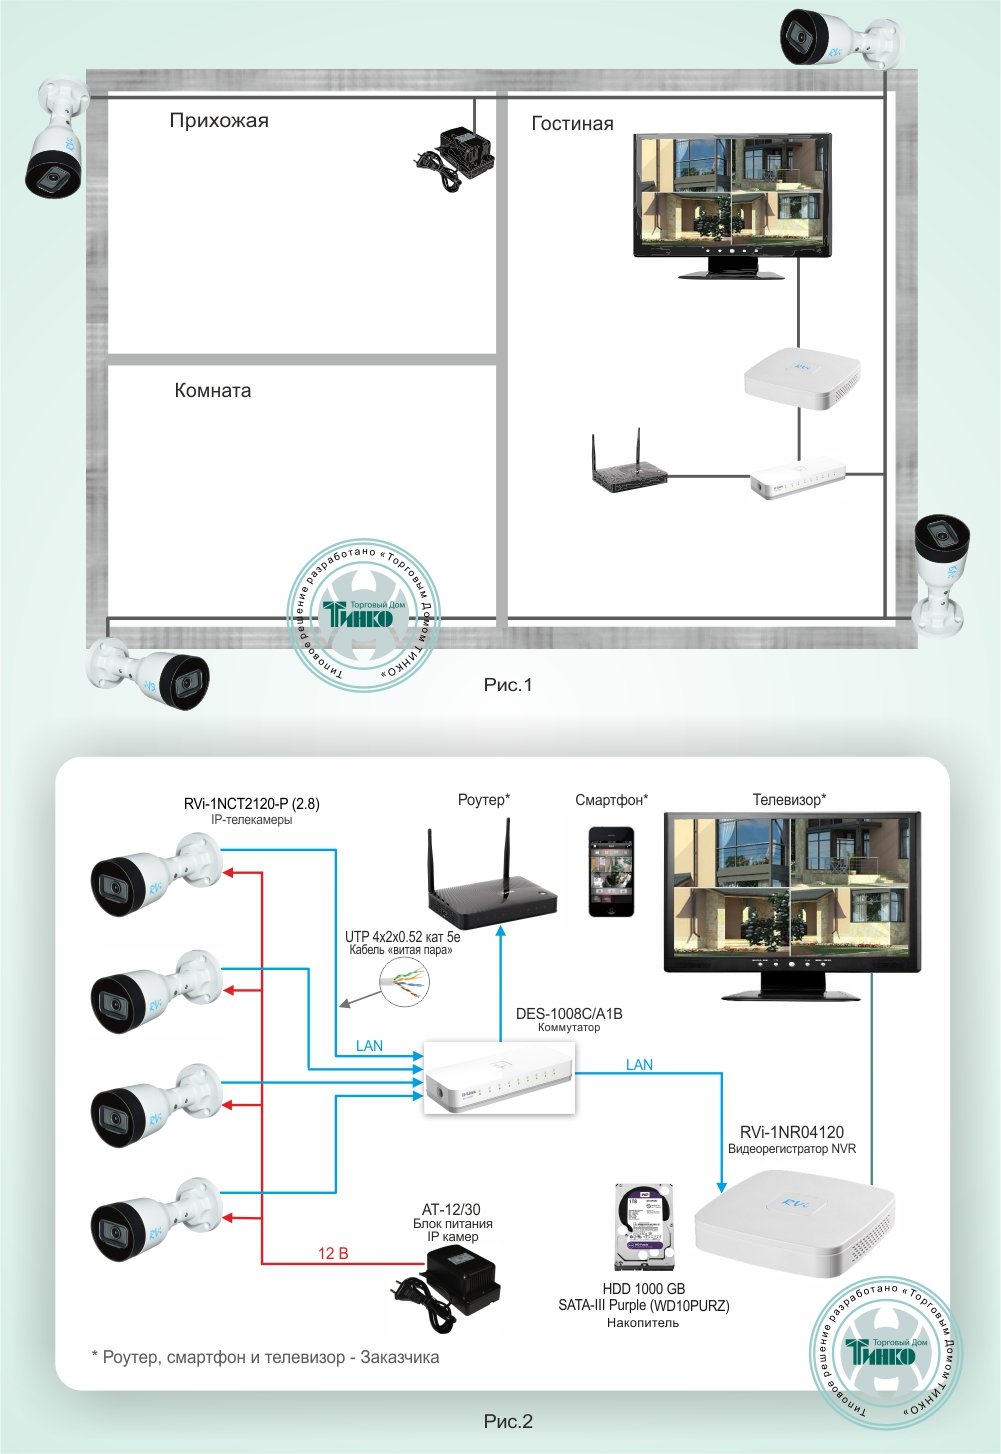 ТСН-009: Система видеонаблюдения для частного дома на базе оборудования RVi